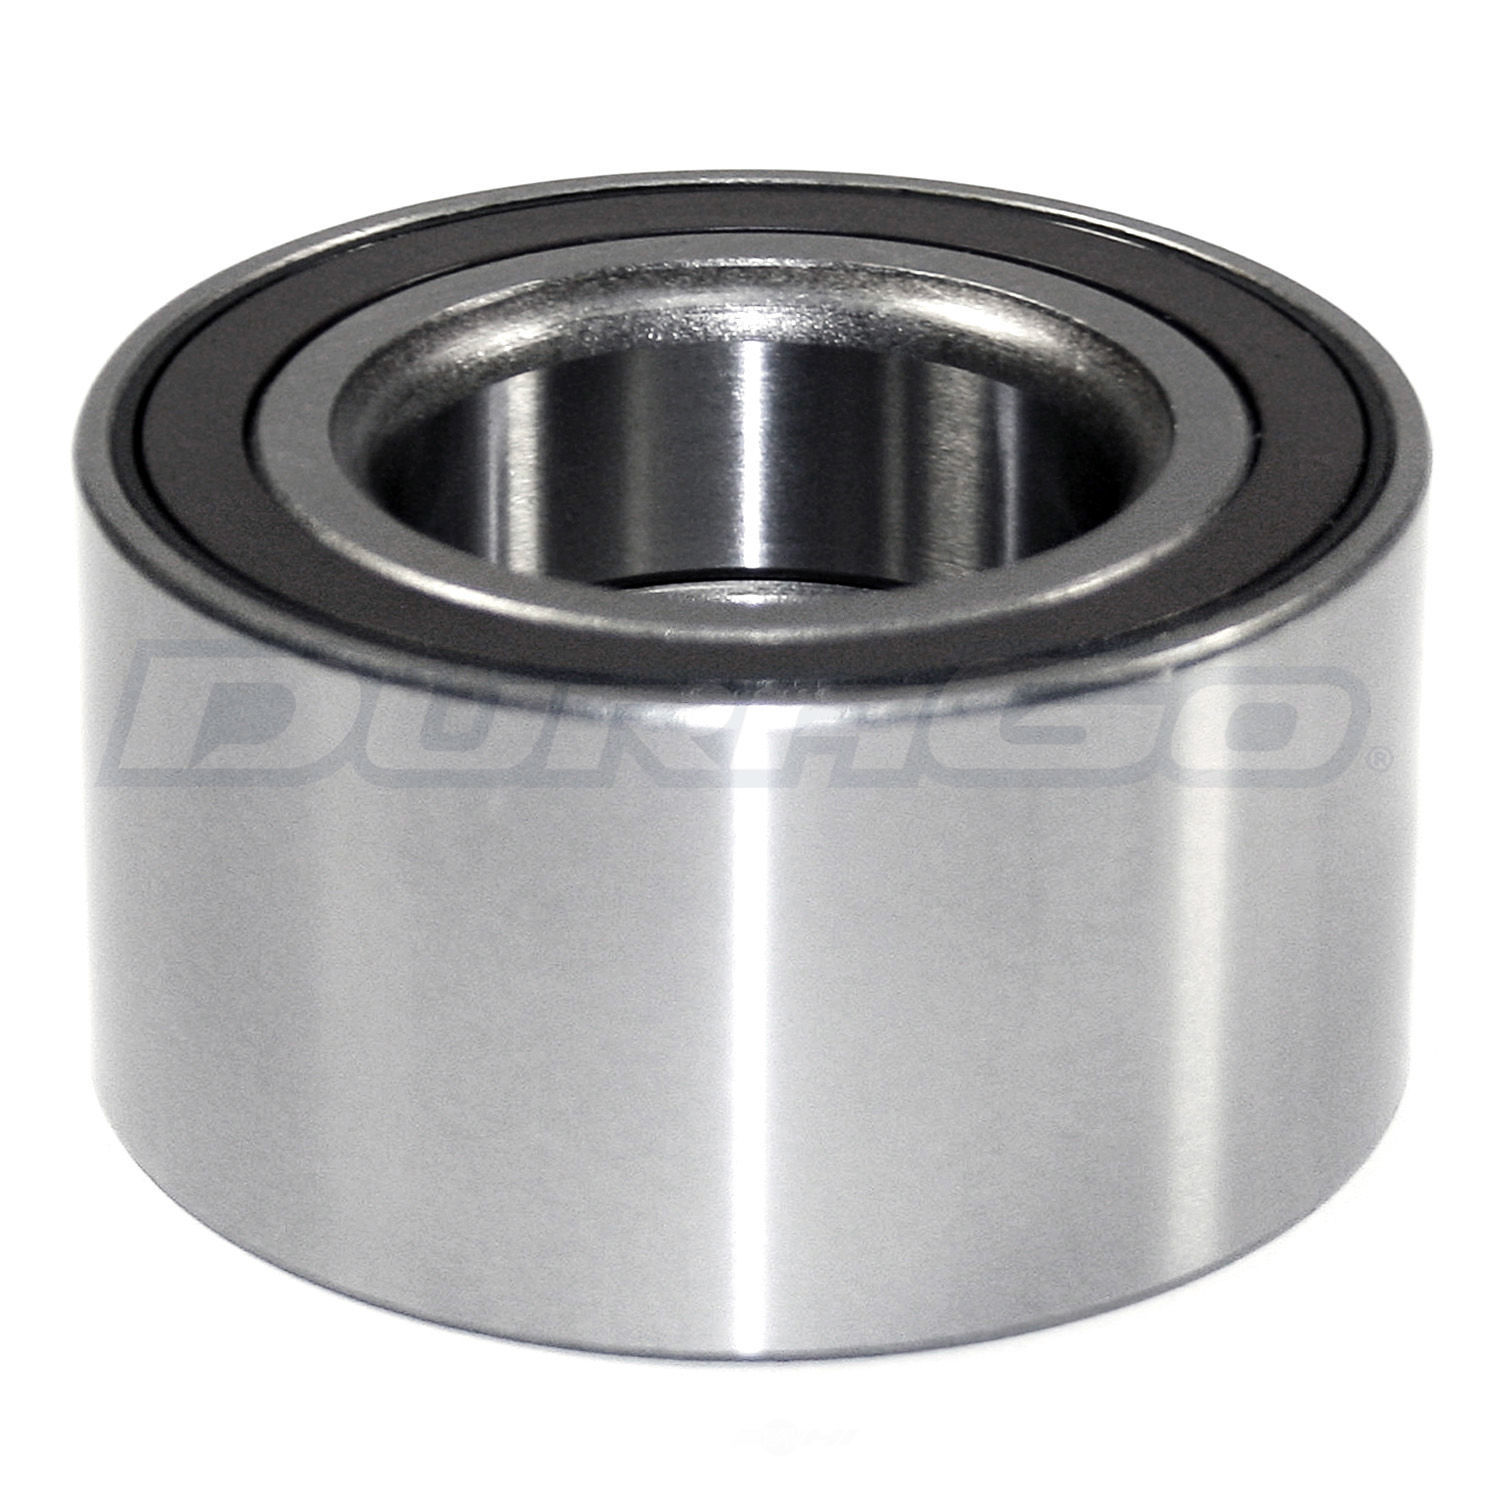 DURAGO - Wheel Bearing - D48 295-10056